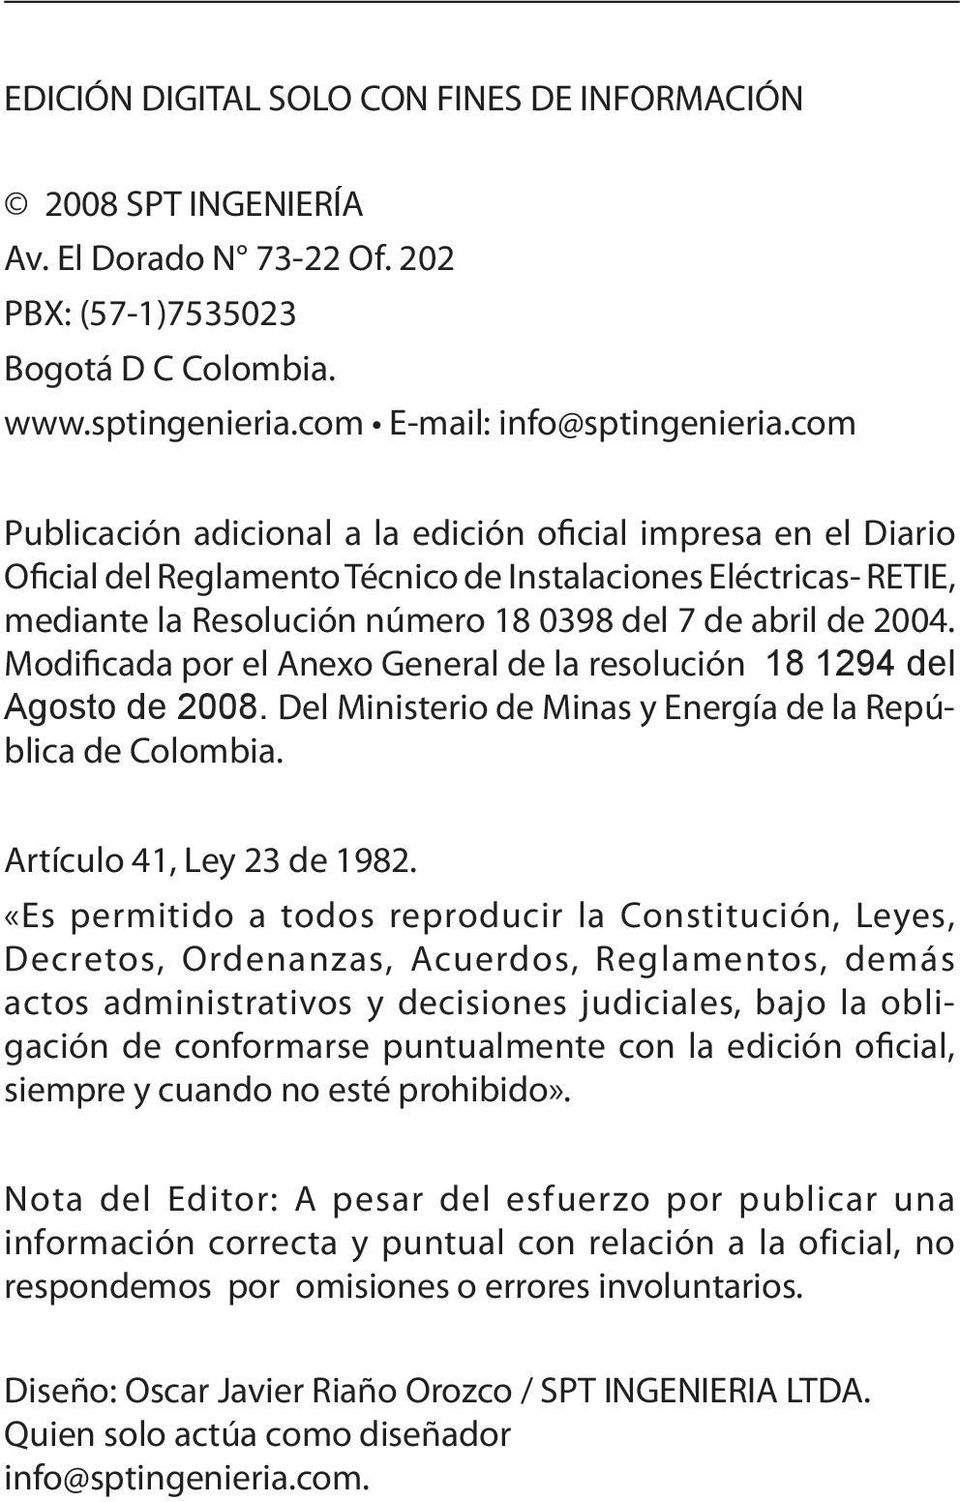 Modificada por el Anexo General de la resolución 18 1294 del Agosto de 2008. Del Ministerio de Minas y Energía de la República de Colombia. Artículo 41, Ley 23 de 1982.